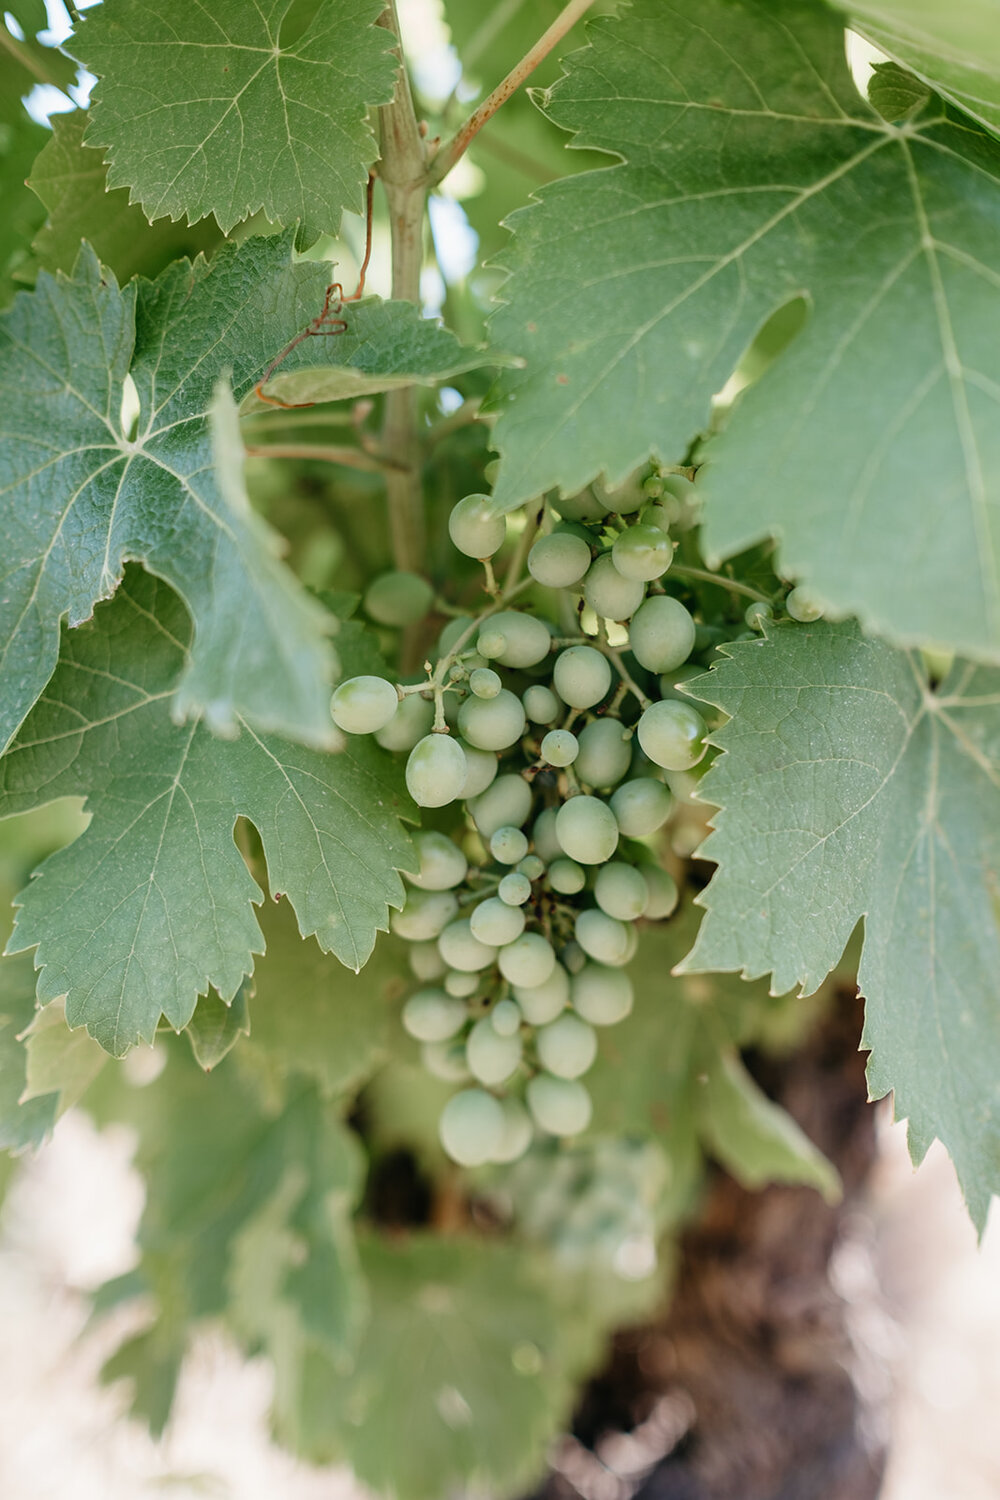 Growing grapes close up